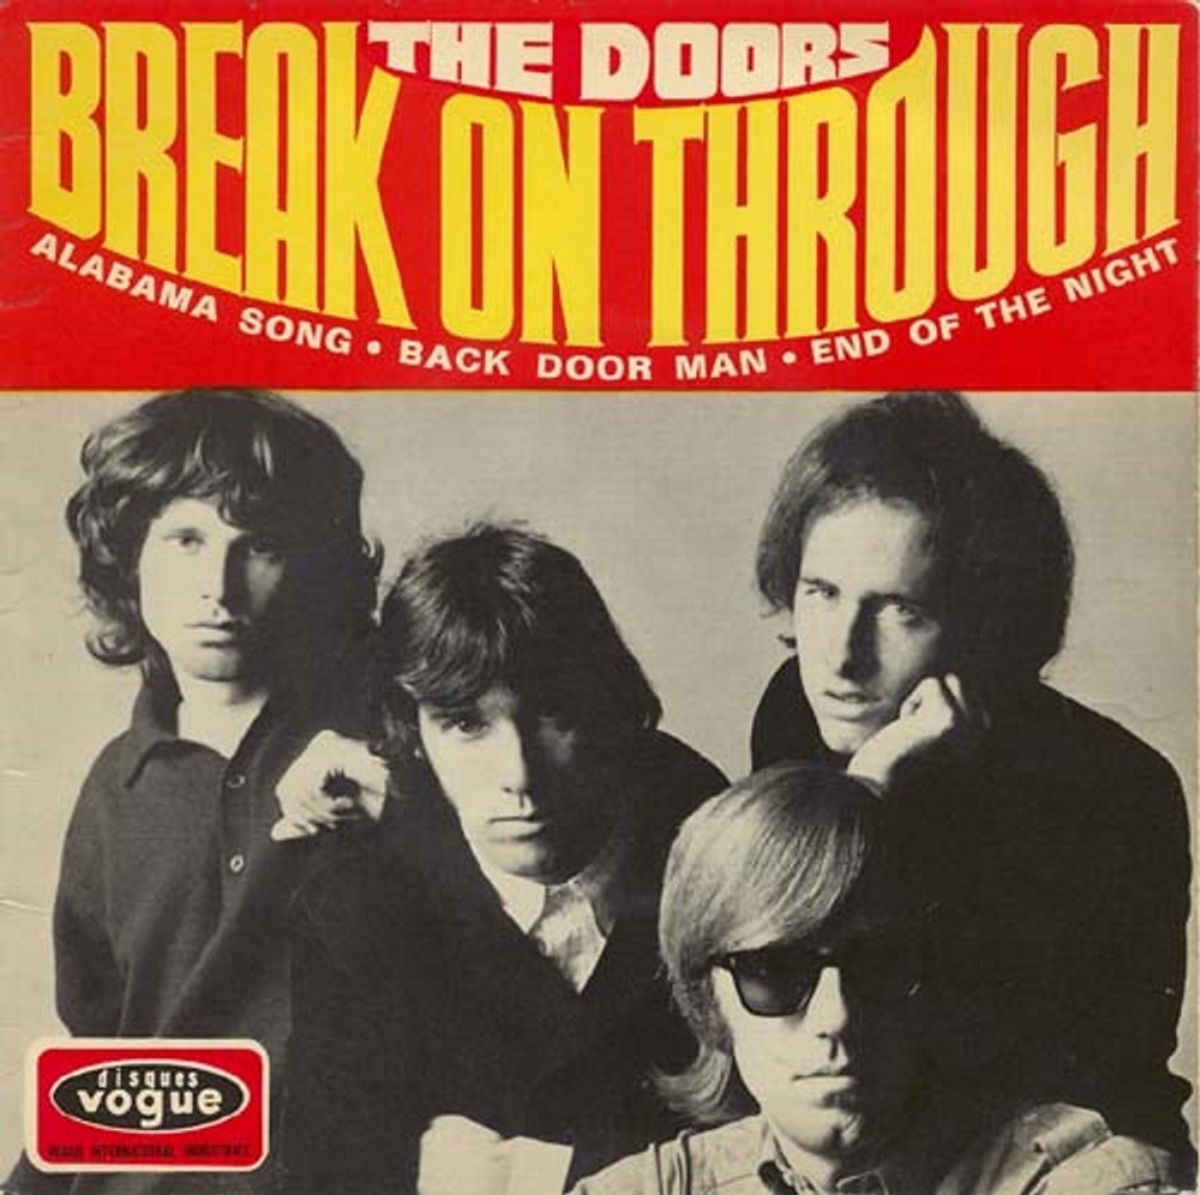 #TweeAkkoordenRock - The Doors - Break On Through (1967)